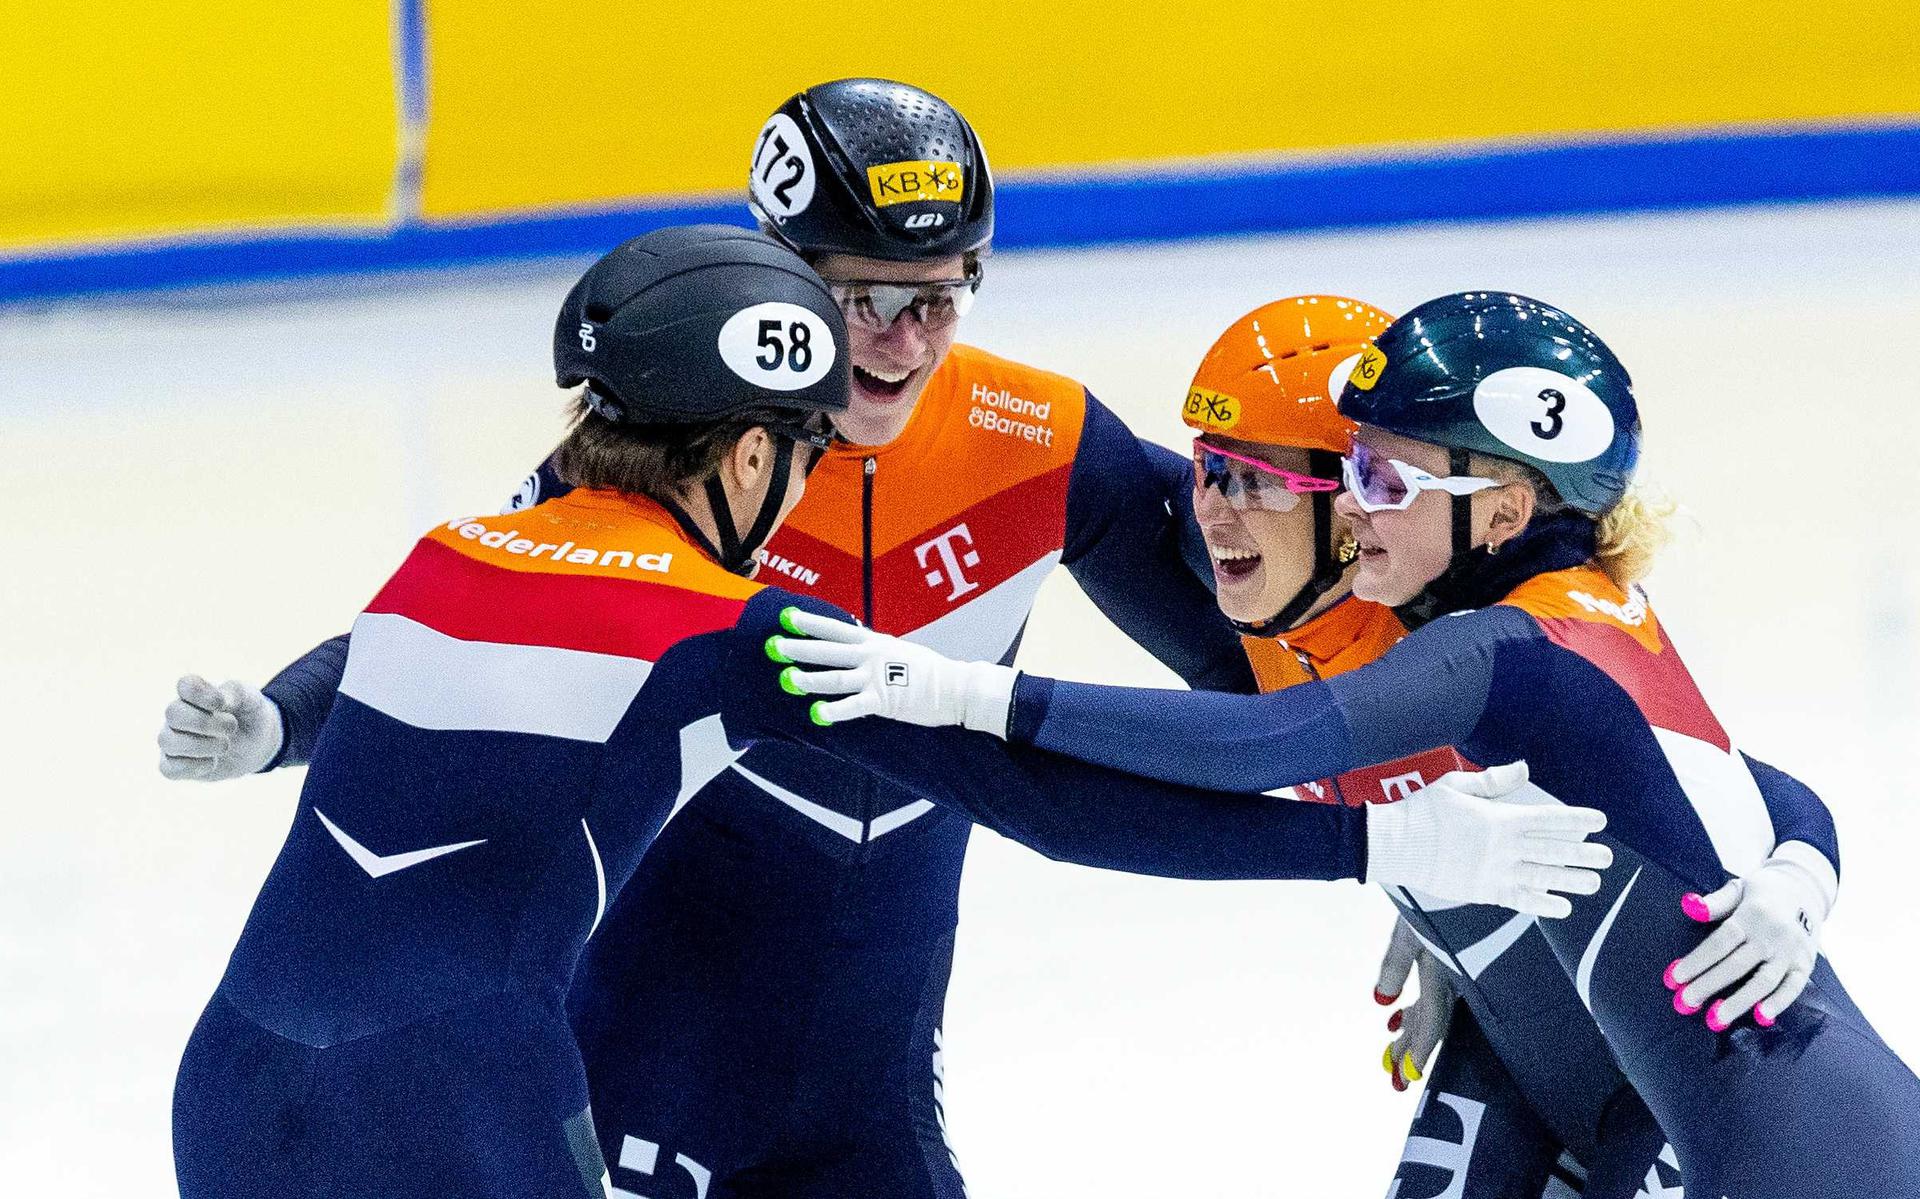 Jens van 't Wout, Teun Boer, Suzanne Schulting en Xandra Velzeboer in actie op de finale 2000m Mixed Relay tijdens het WK Shorttrack in Zuid-Korea. 